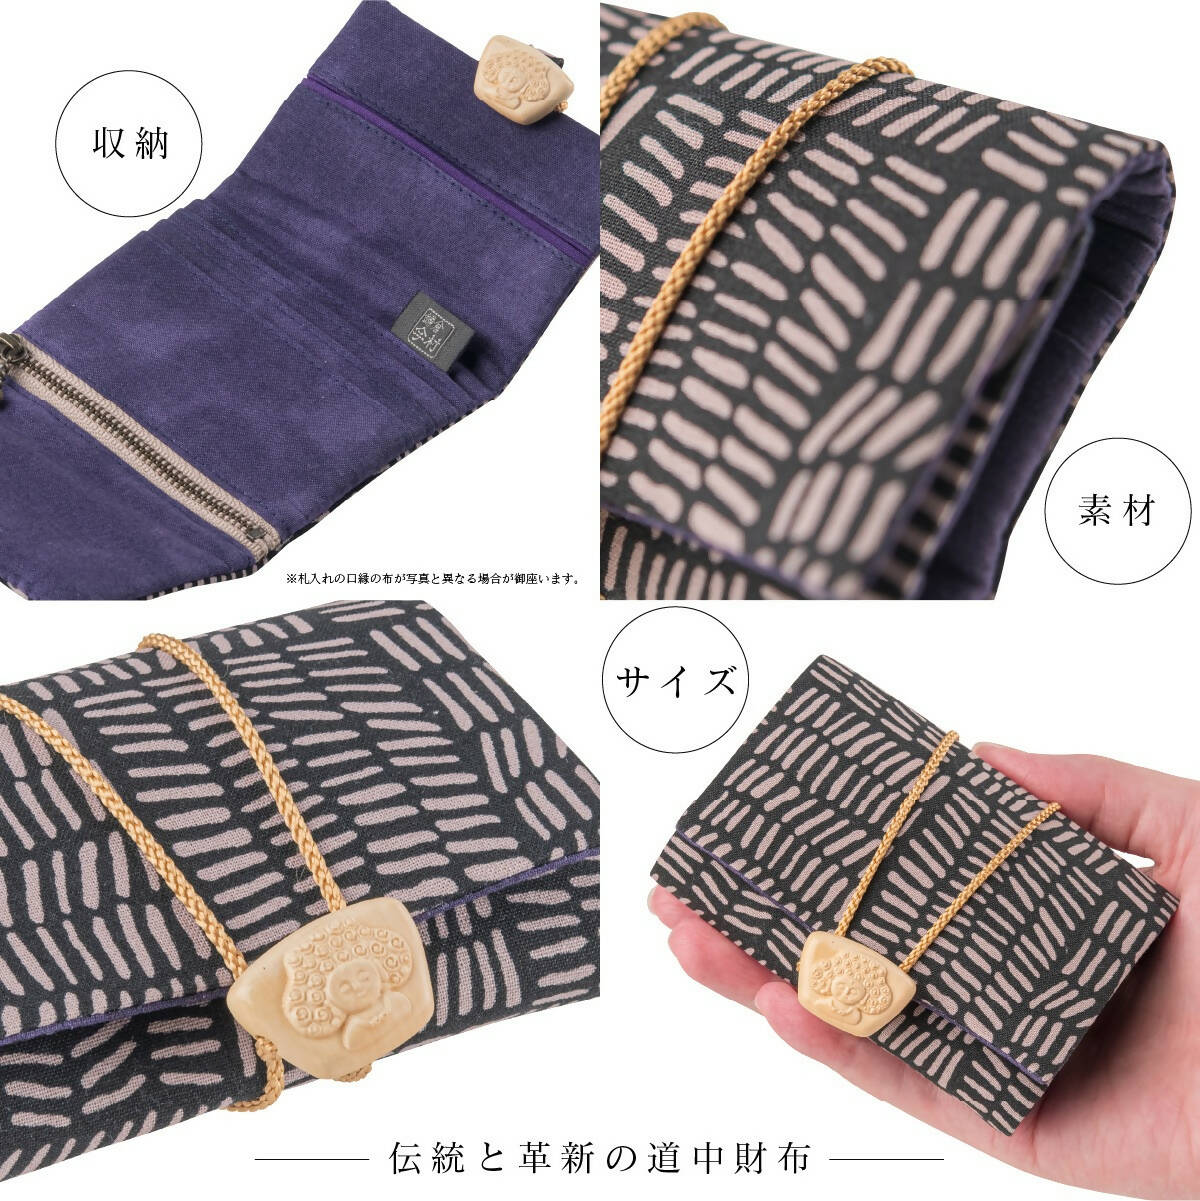 Mihotoke Buddhist Wallet – Black – Handcrafted in Kamakura, Japan